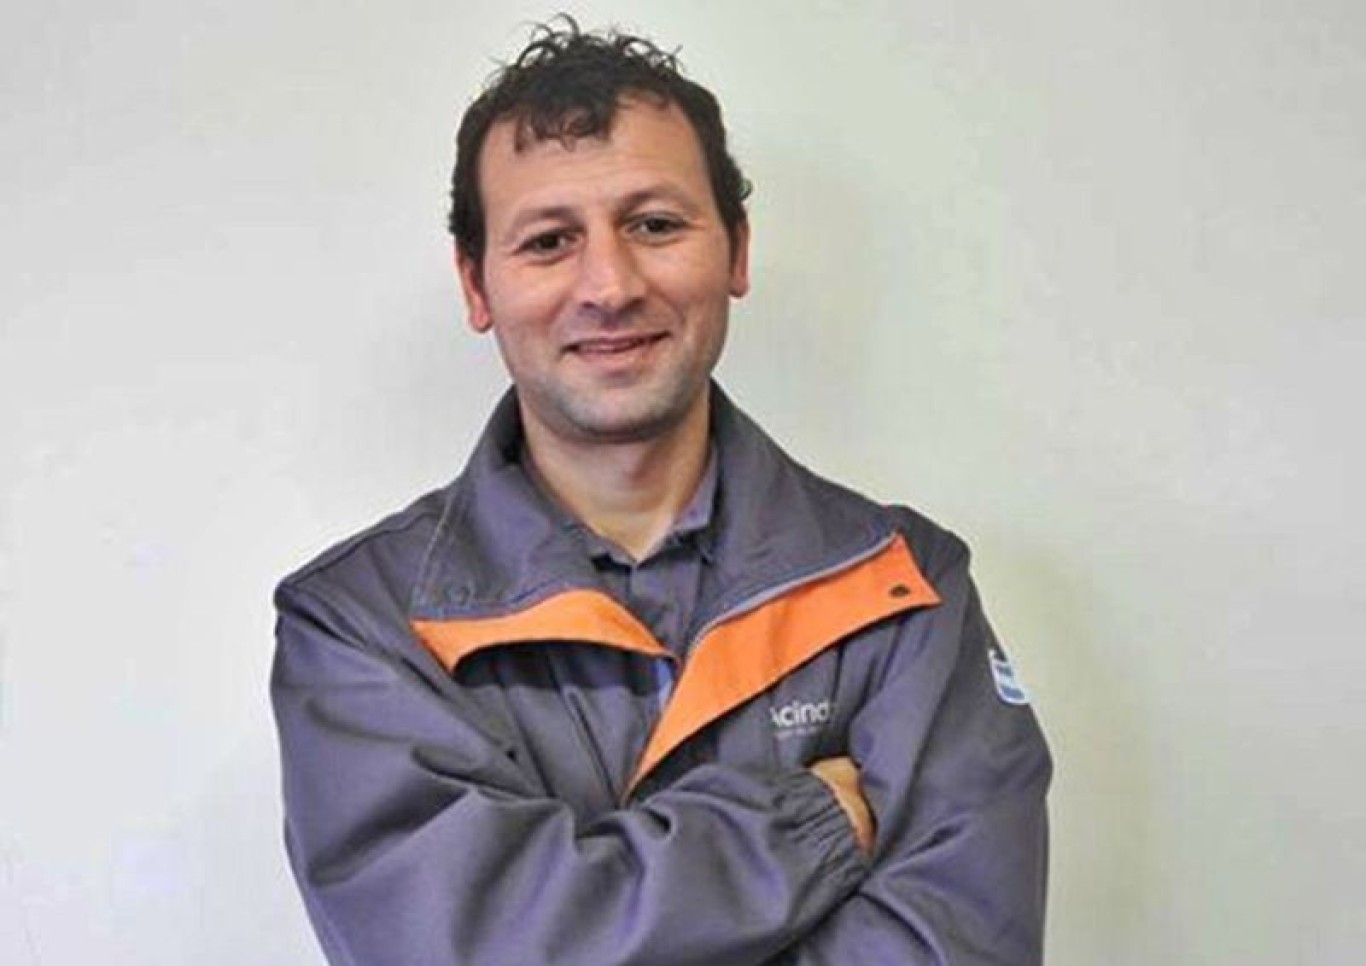 Pablo Gonzalez: “Hay planes de retiro voluntario pero no significa que la empresa genere un conflicto para despedir gente”